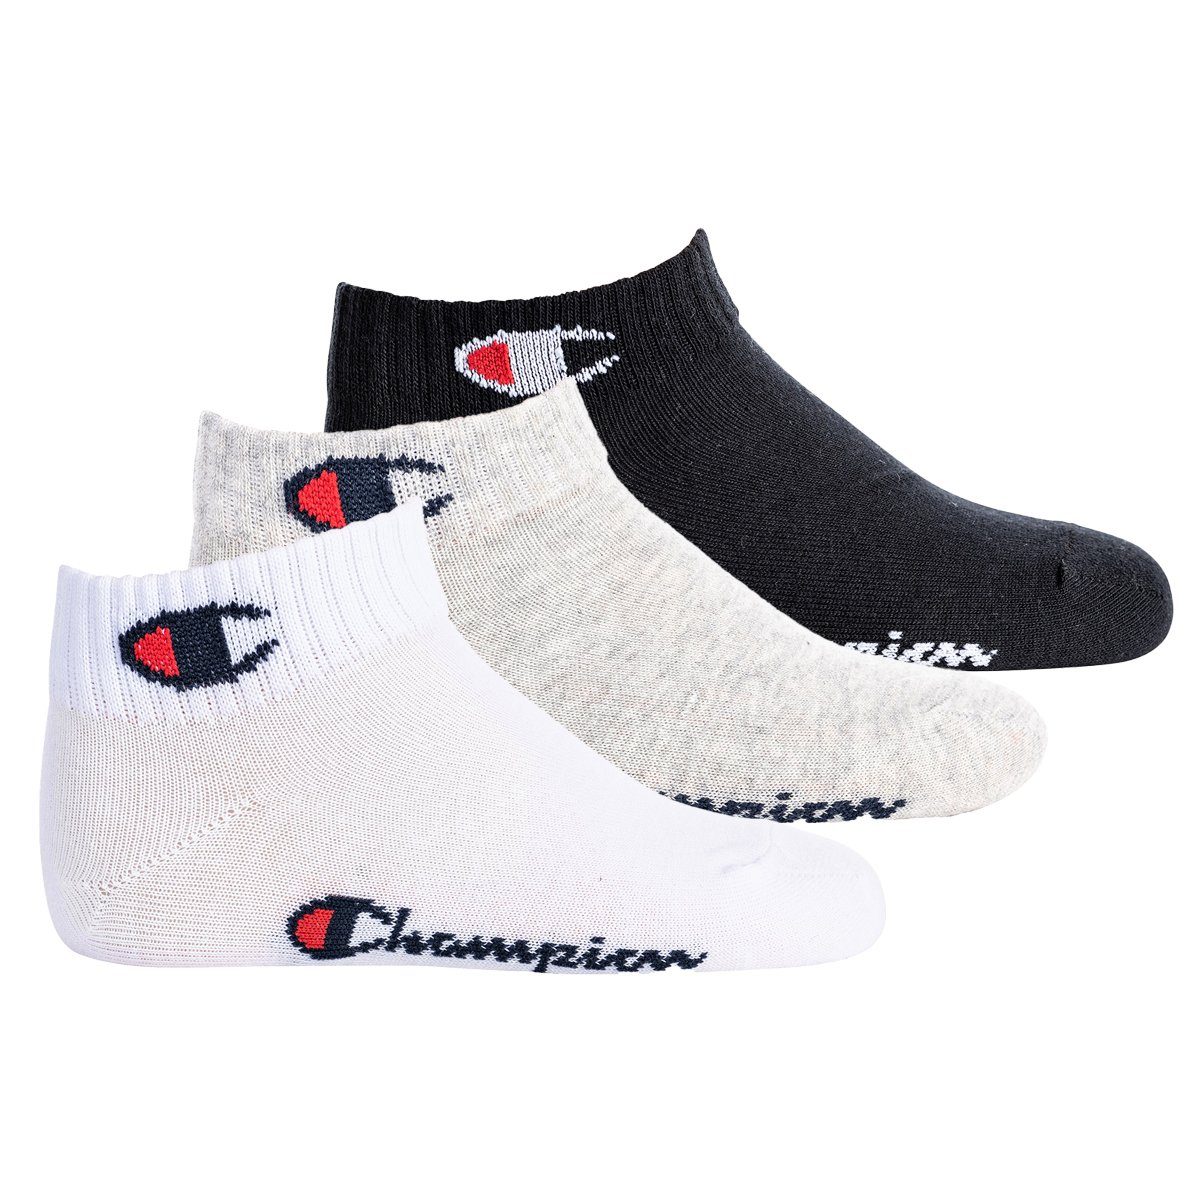 Champion Freizeitsocken Kinder Socken, 3er Pack- Quarter, einfarbig Schwarz/Grau/Weiß